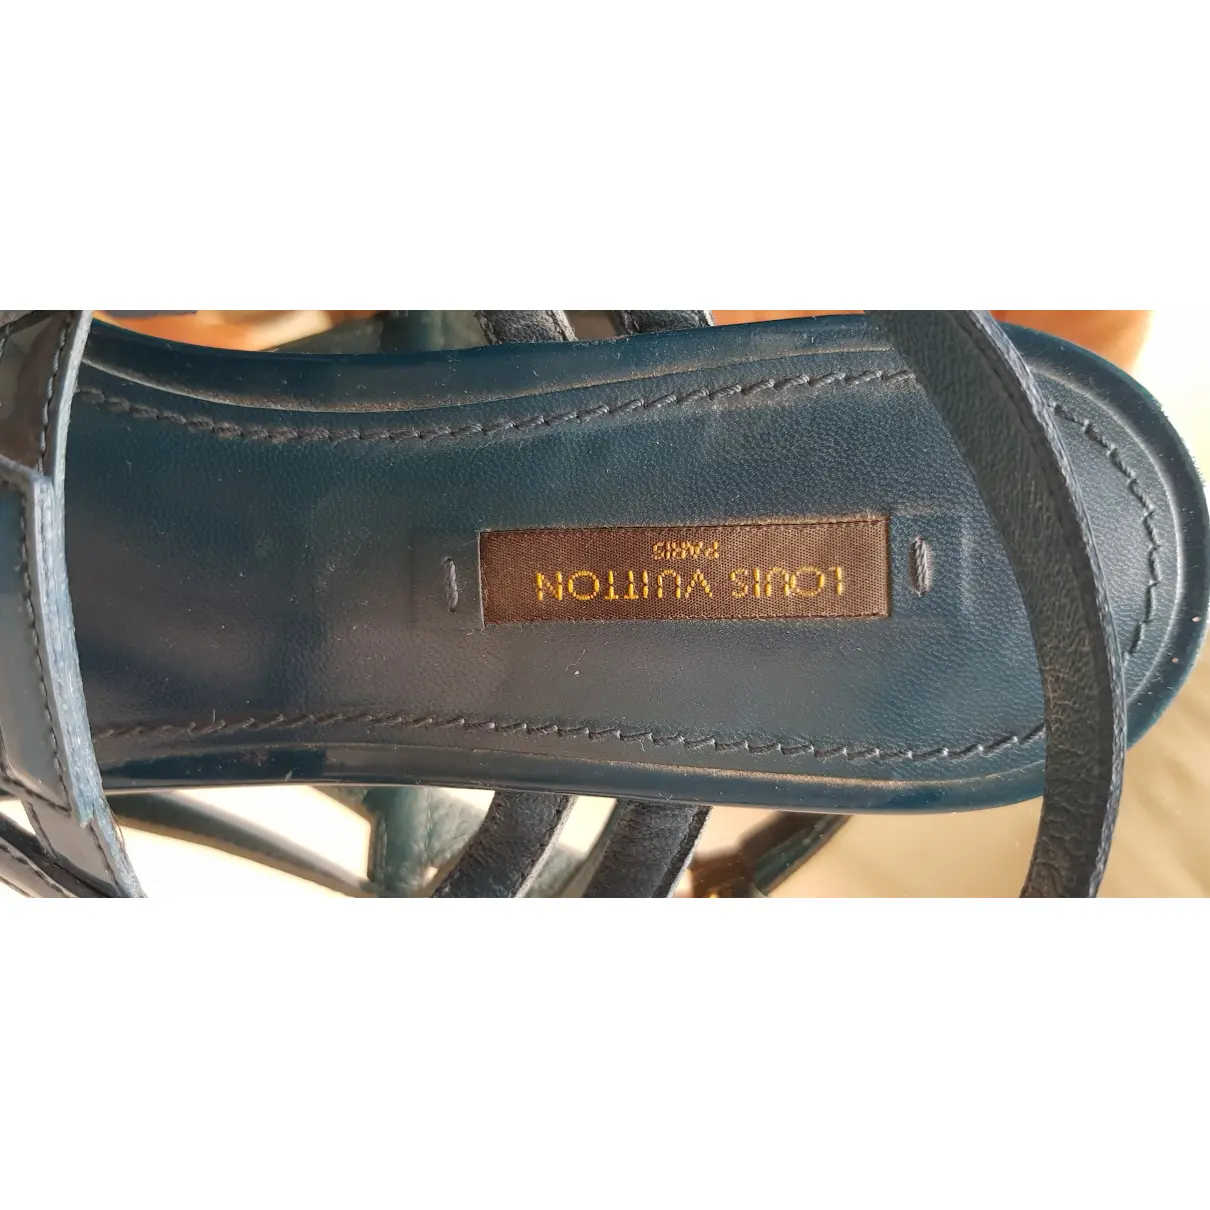 Patent leather flip flops Louis Vuitton